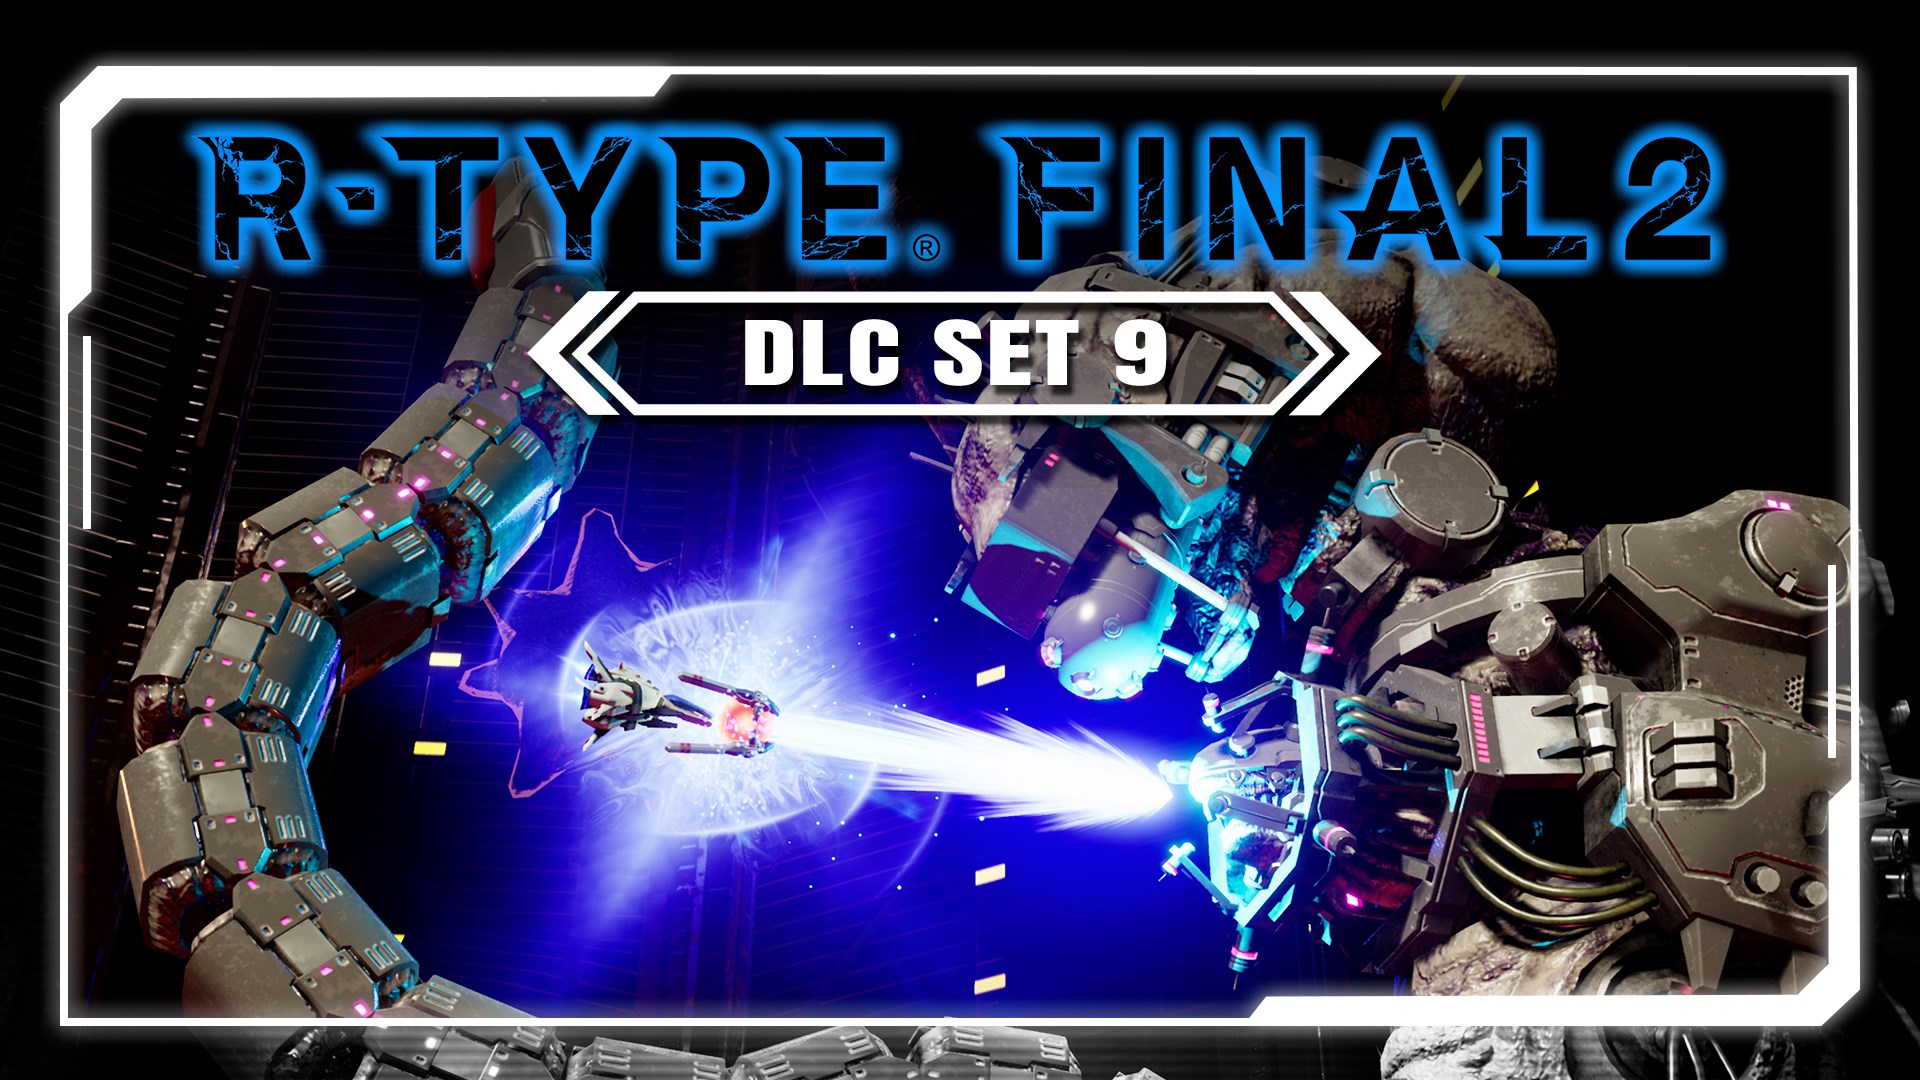 R-Type Final 2 PC: DLC Set 9